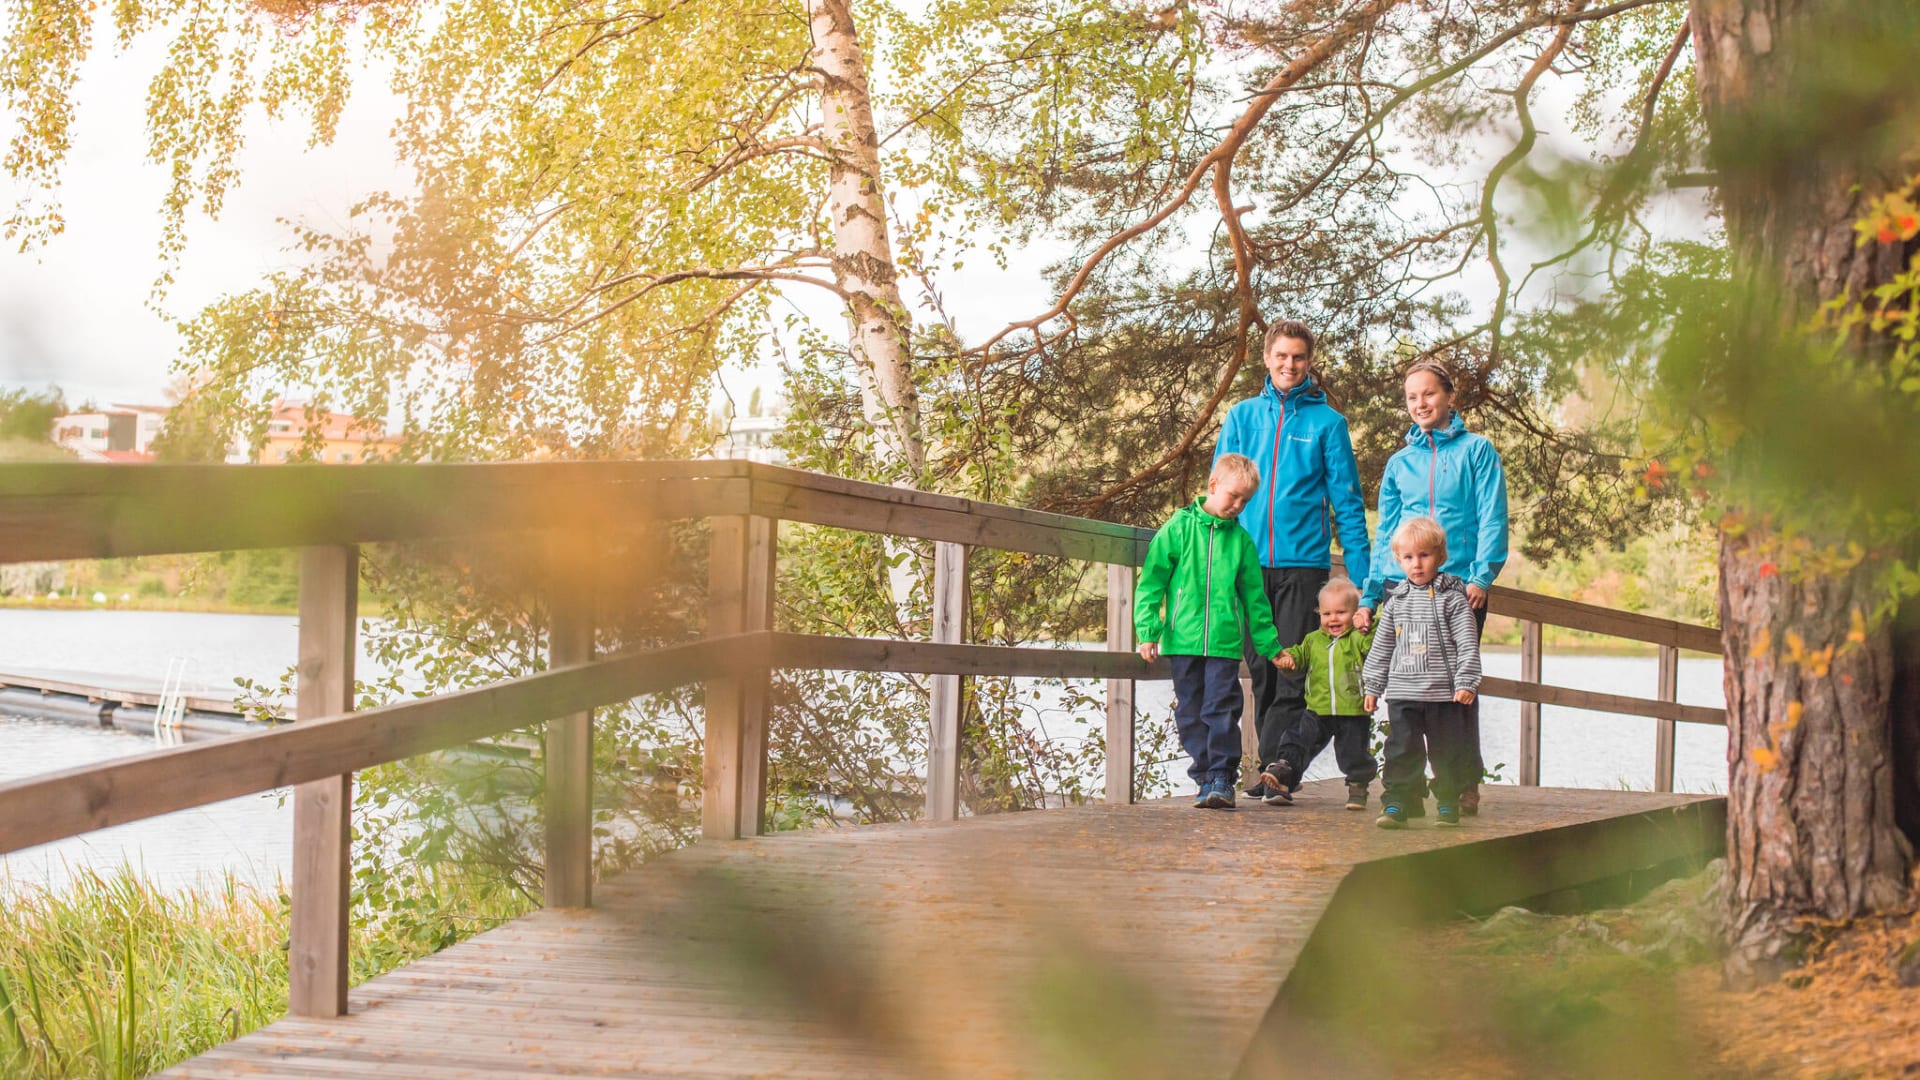 Perhe kävelee puista siltaa pitkin järven rannassa.